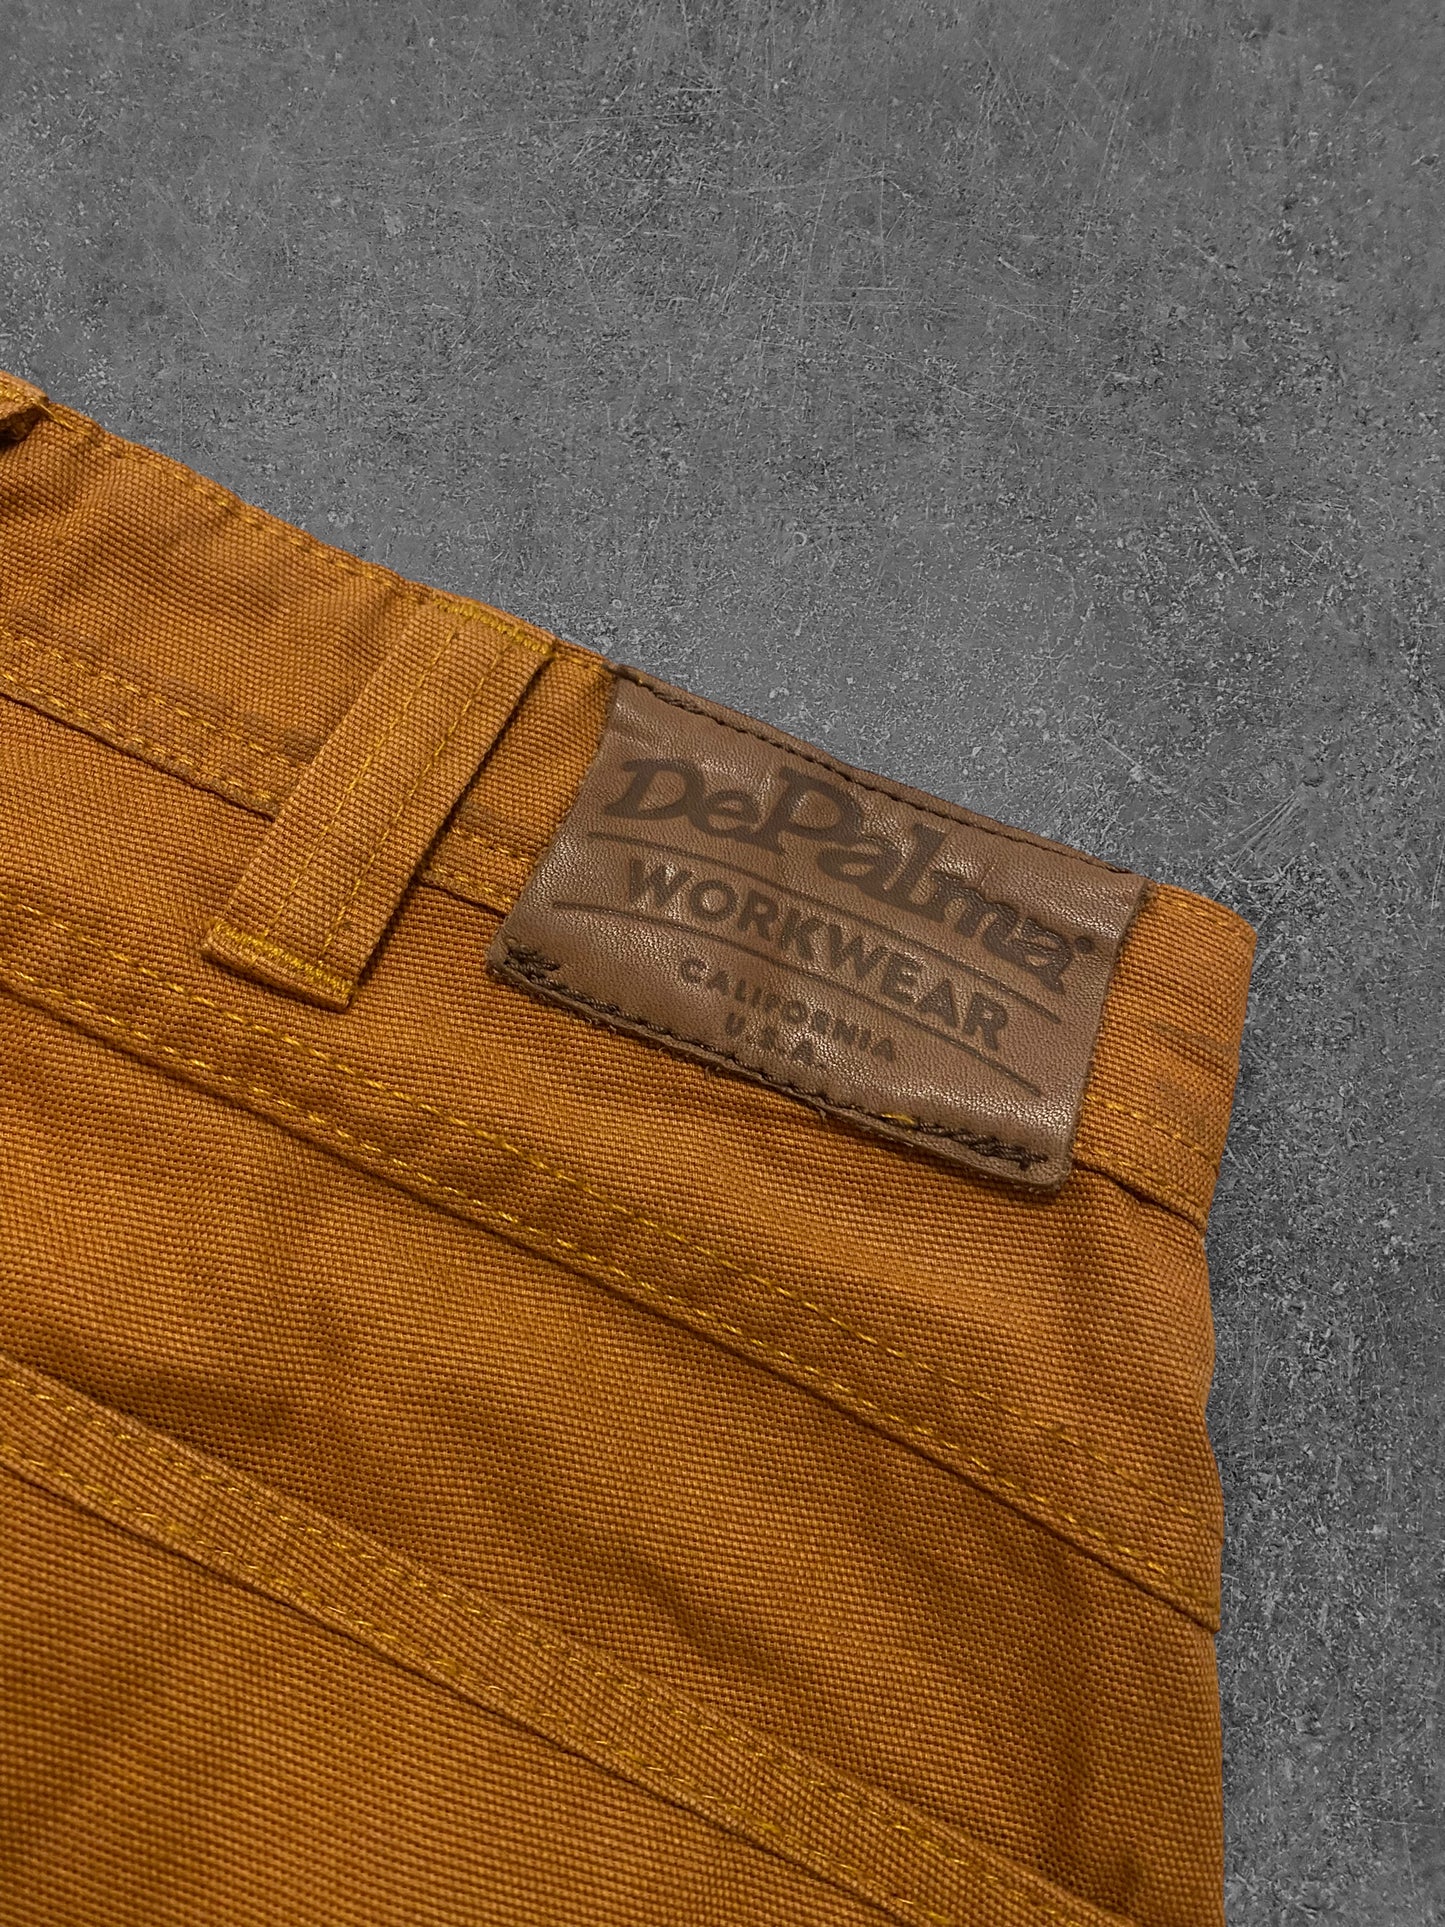 Vintage DePalma Cargo Workpants (L)